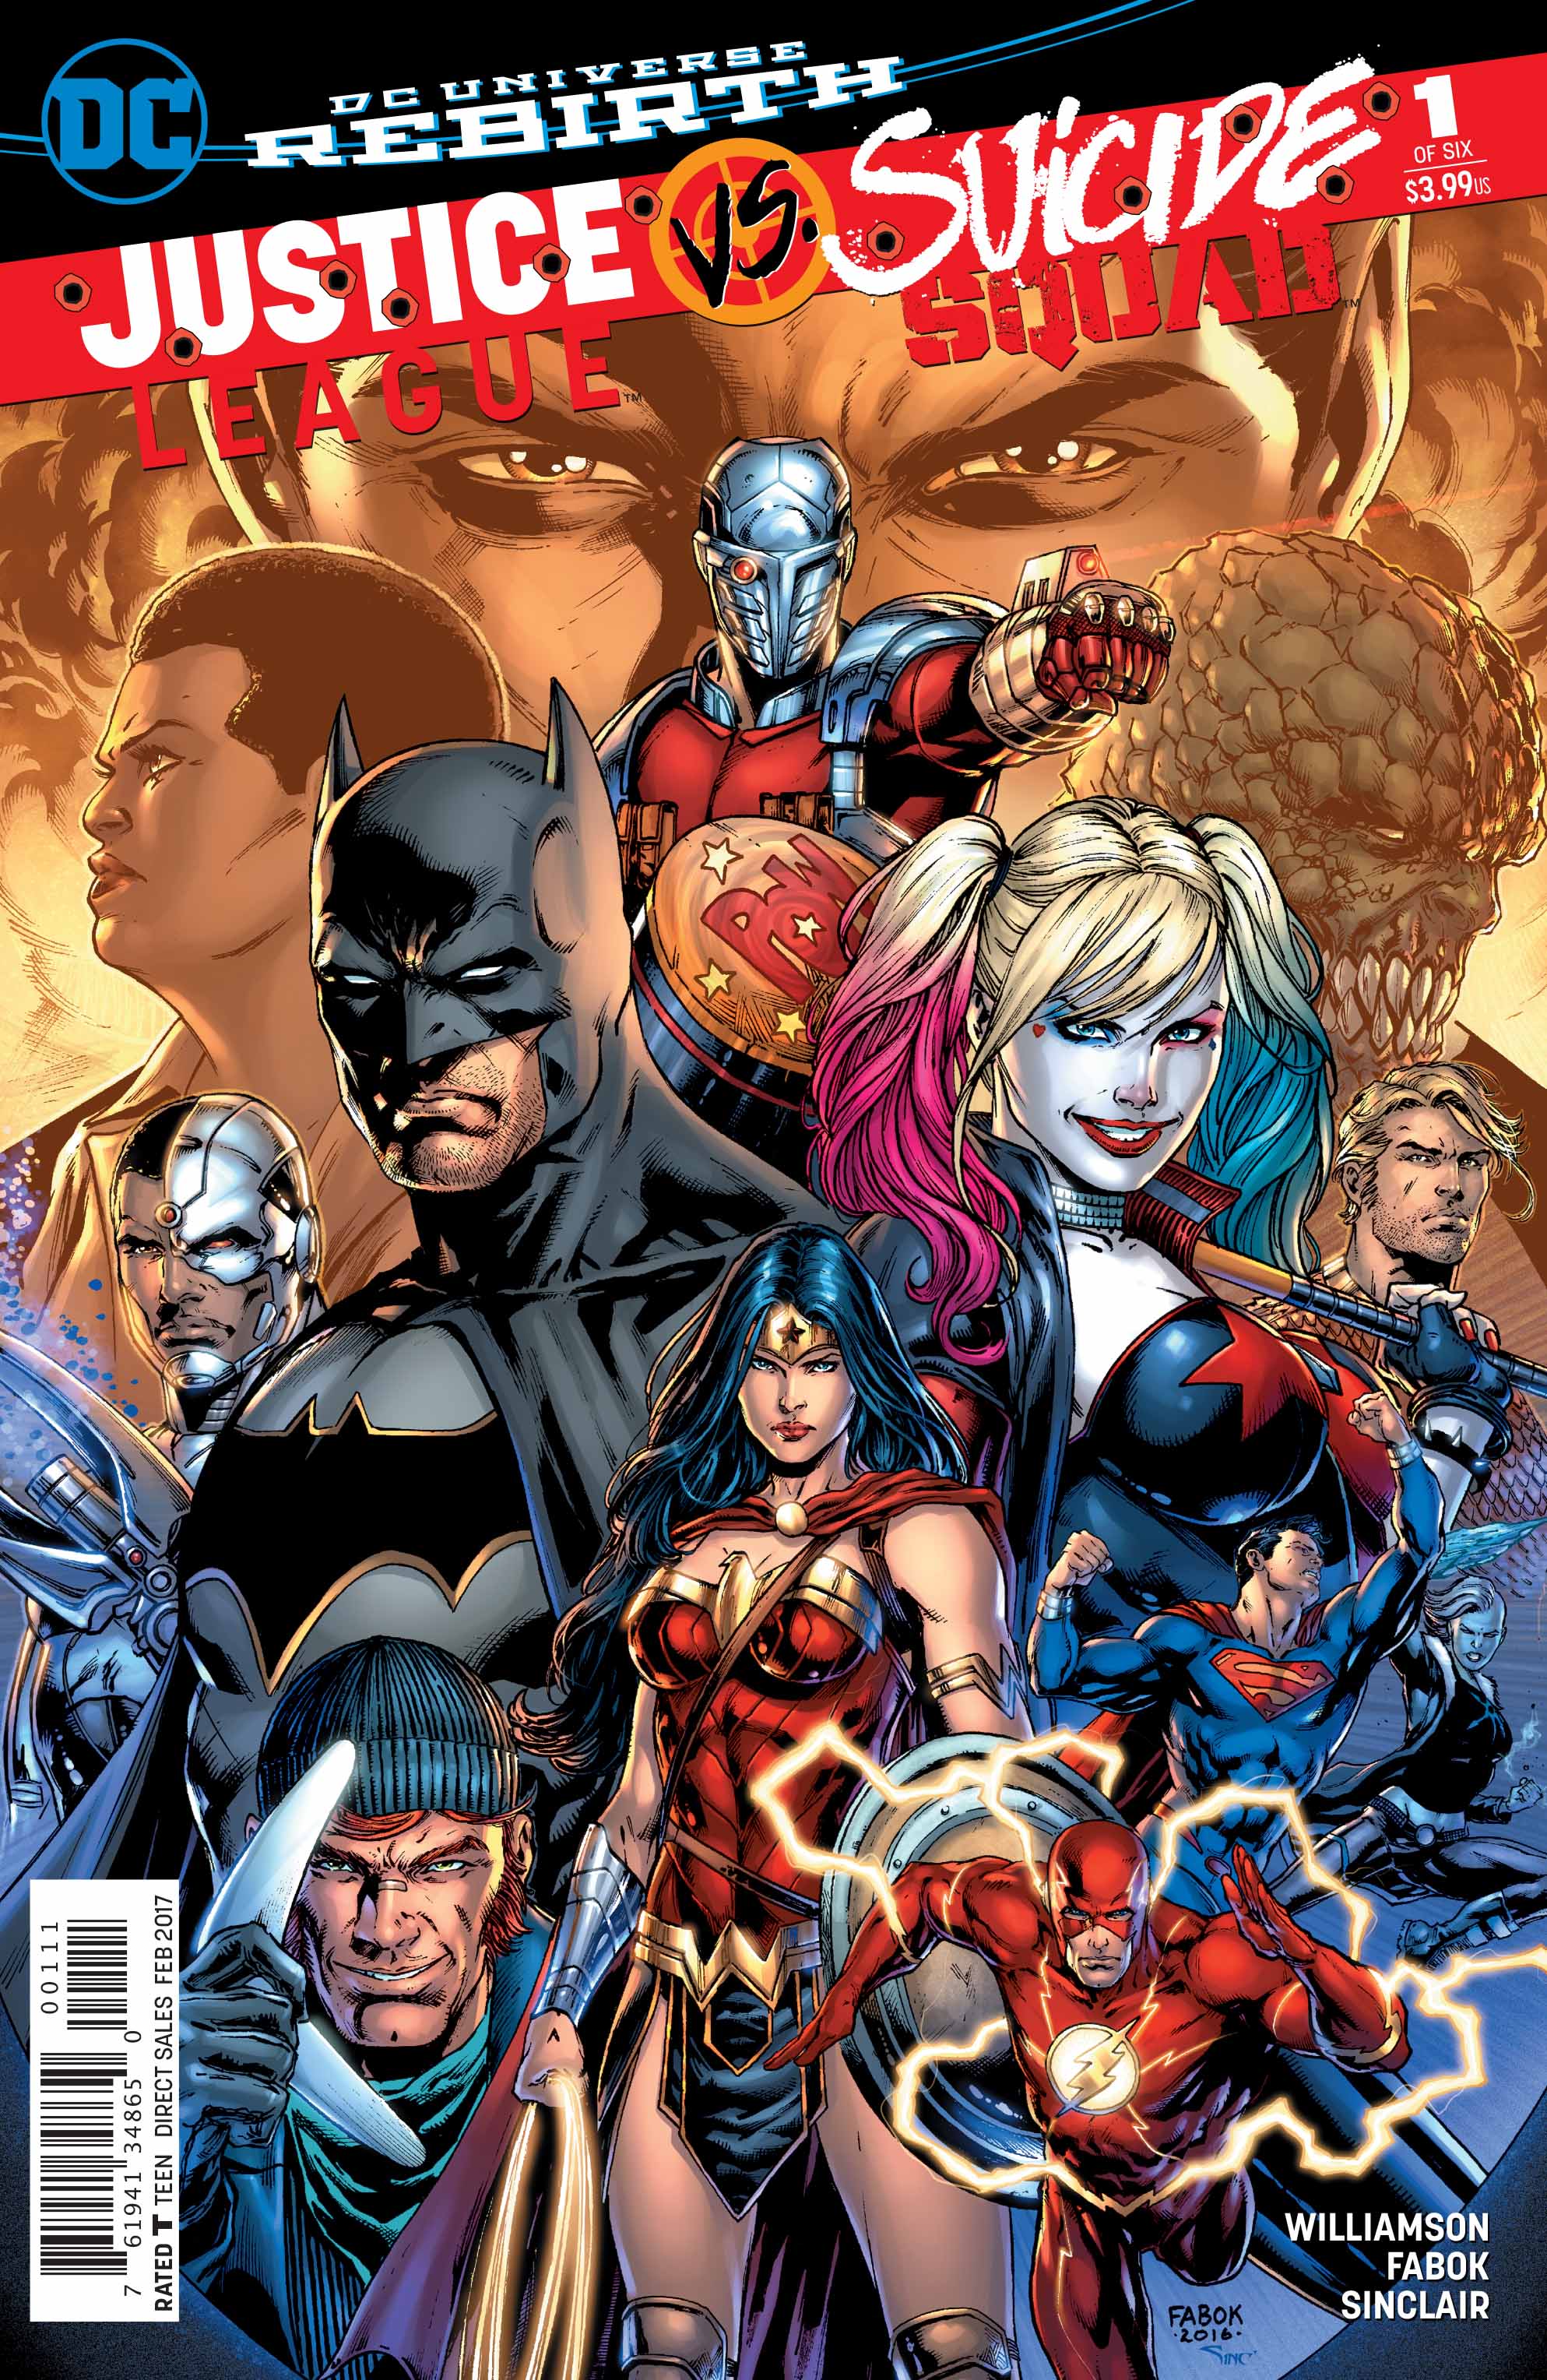 Justice League vs. Suicide Squad #1 Review